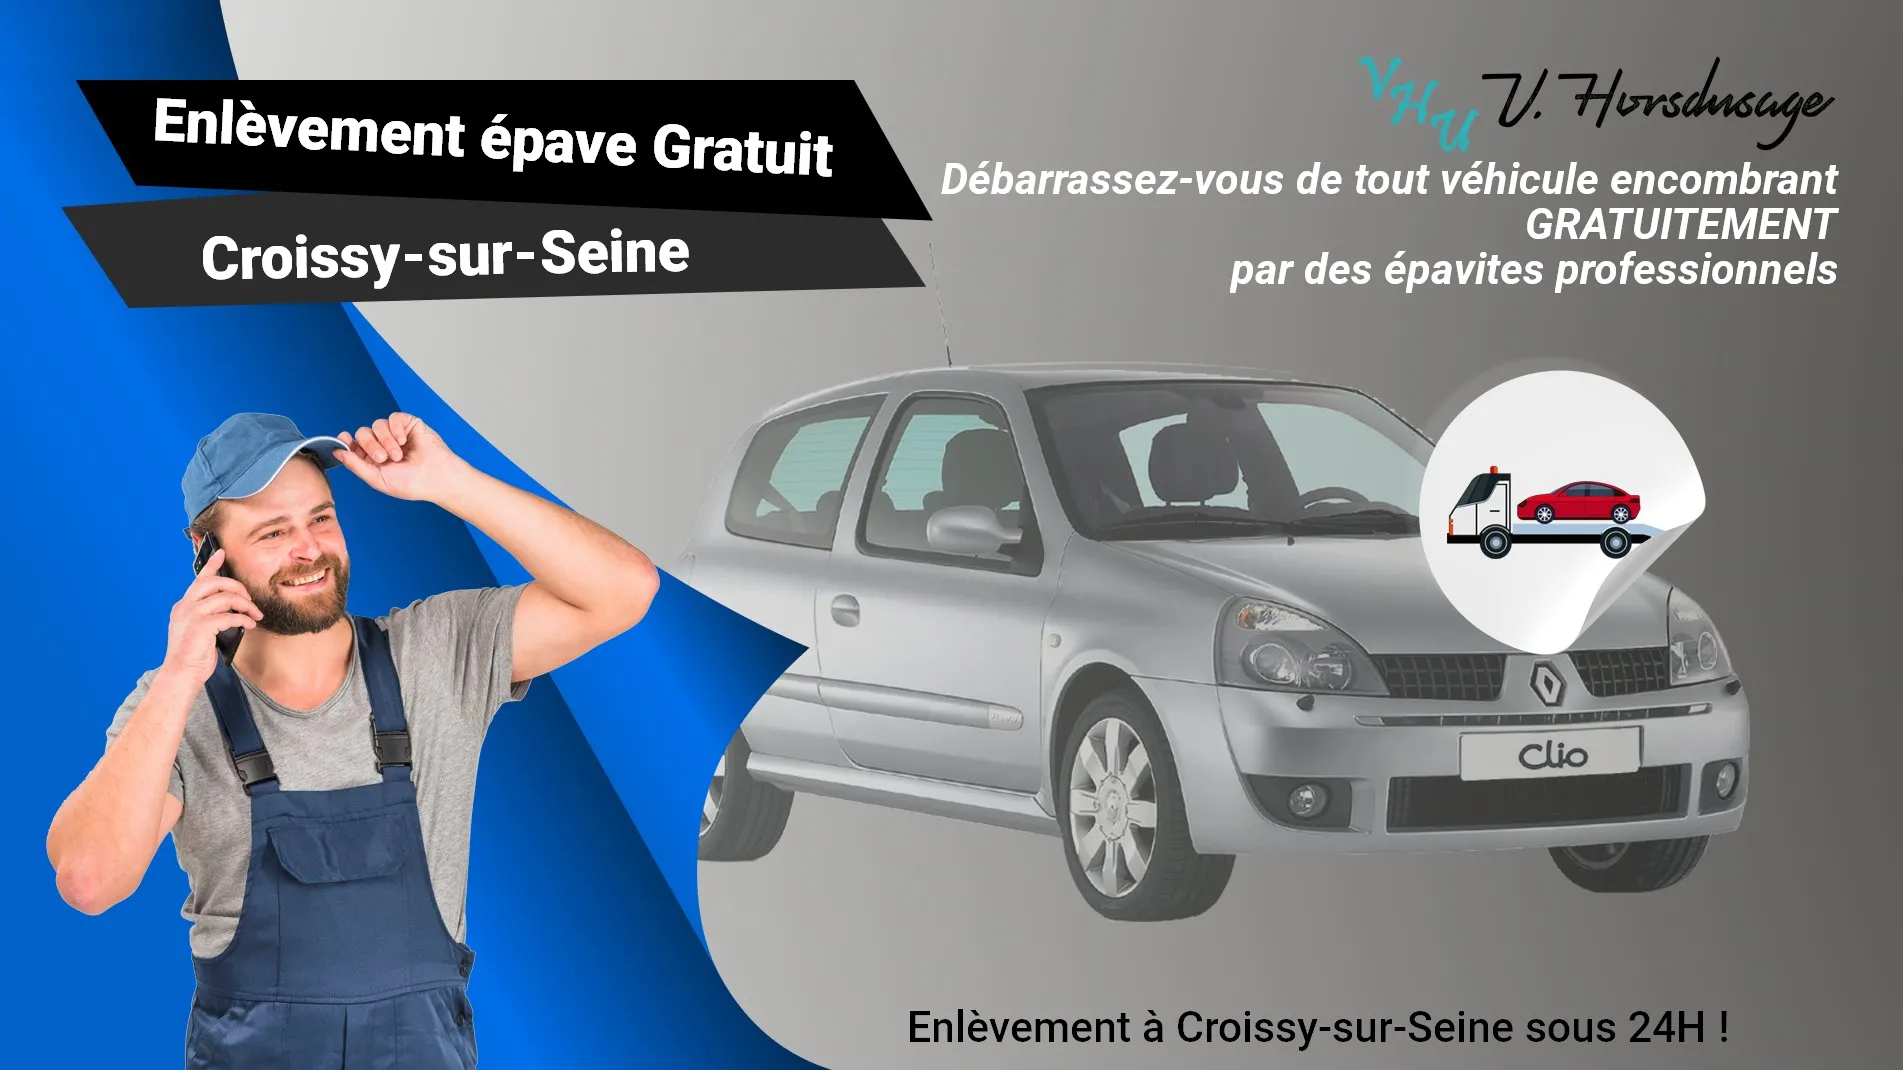 Pour un enlèvement gratuit à Croissy-sur-Seine, contactez nos épavistes agréé VHU